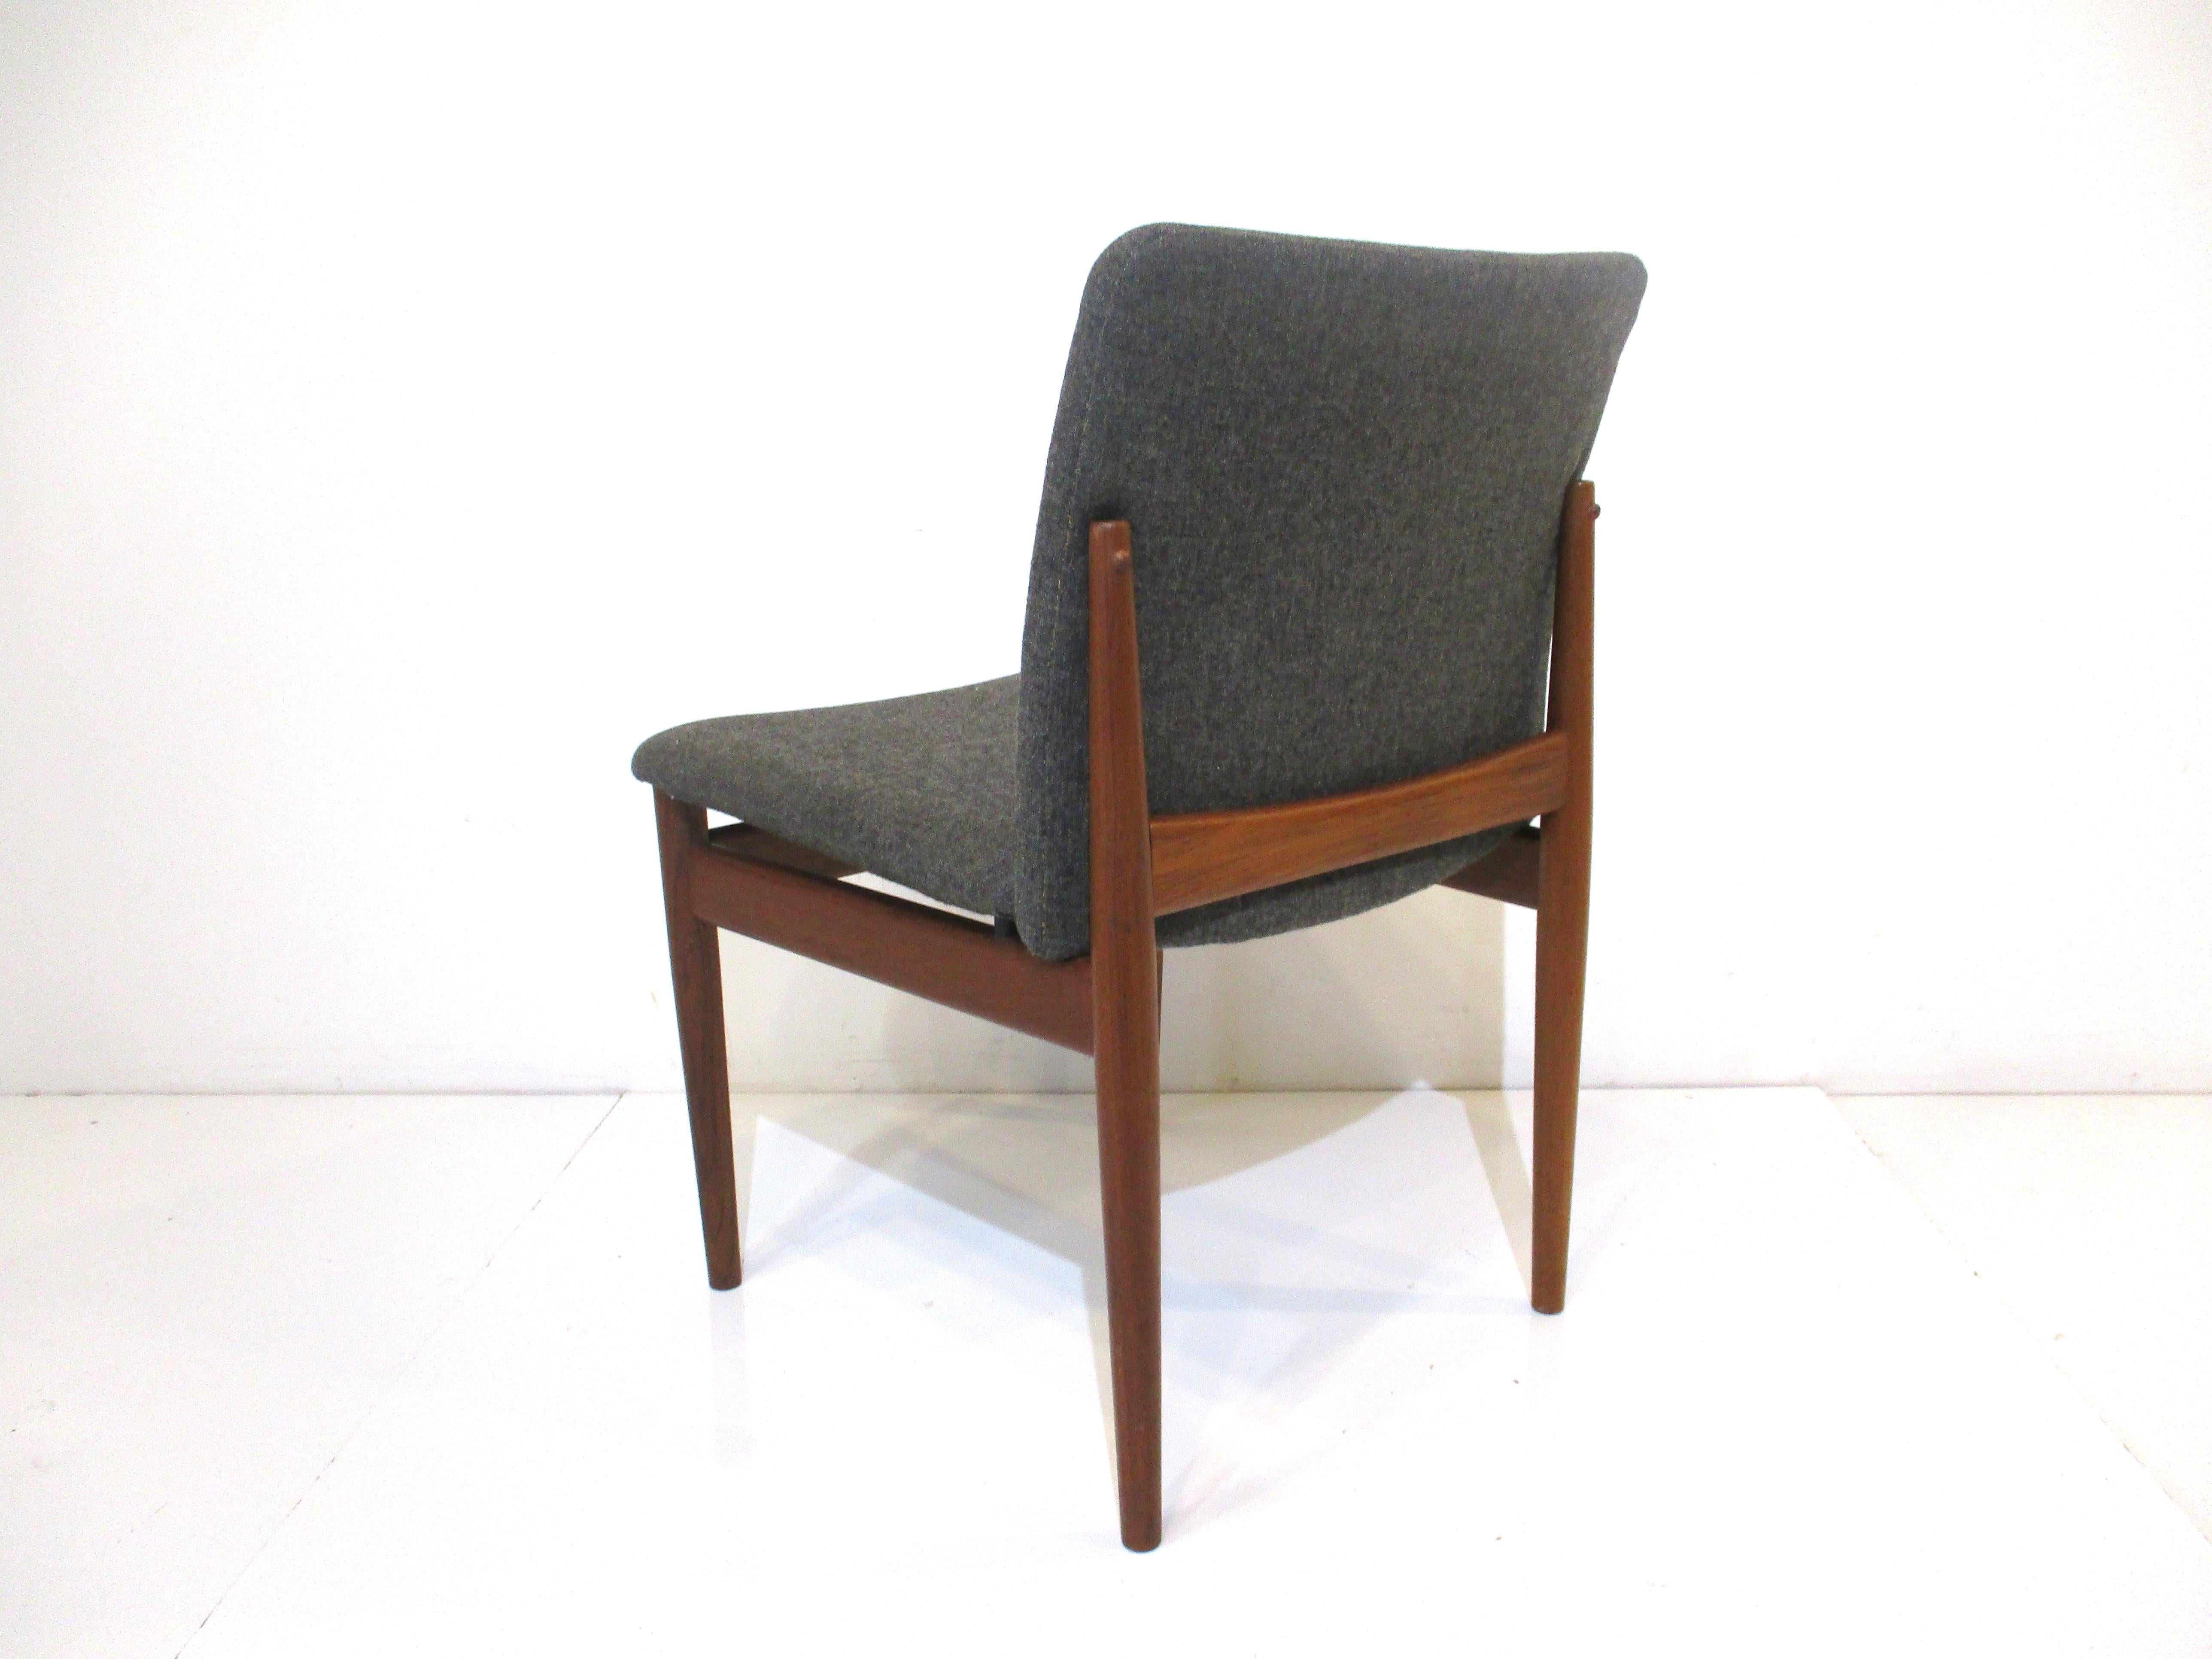 Upholstery Finn Juhl 191 Teak Dining Chairs by France & Sons Denmark